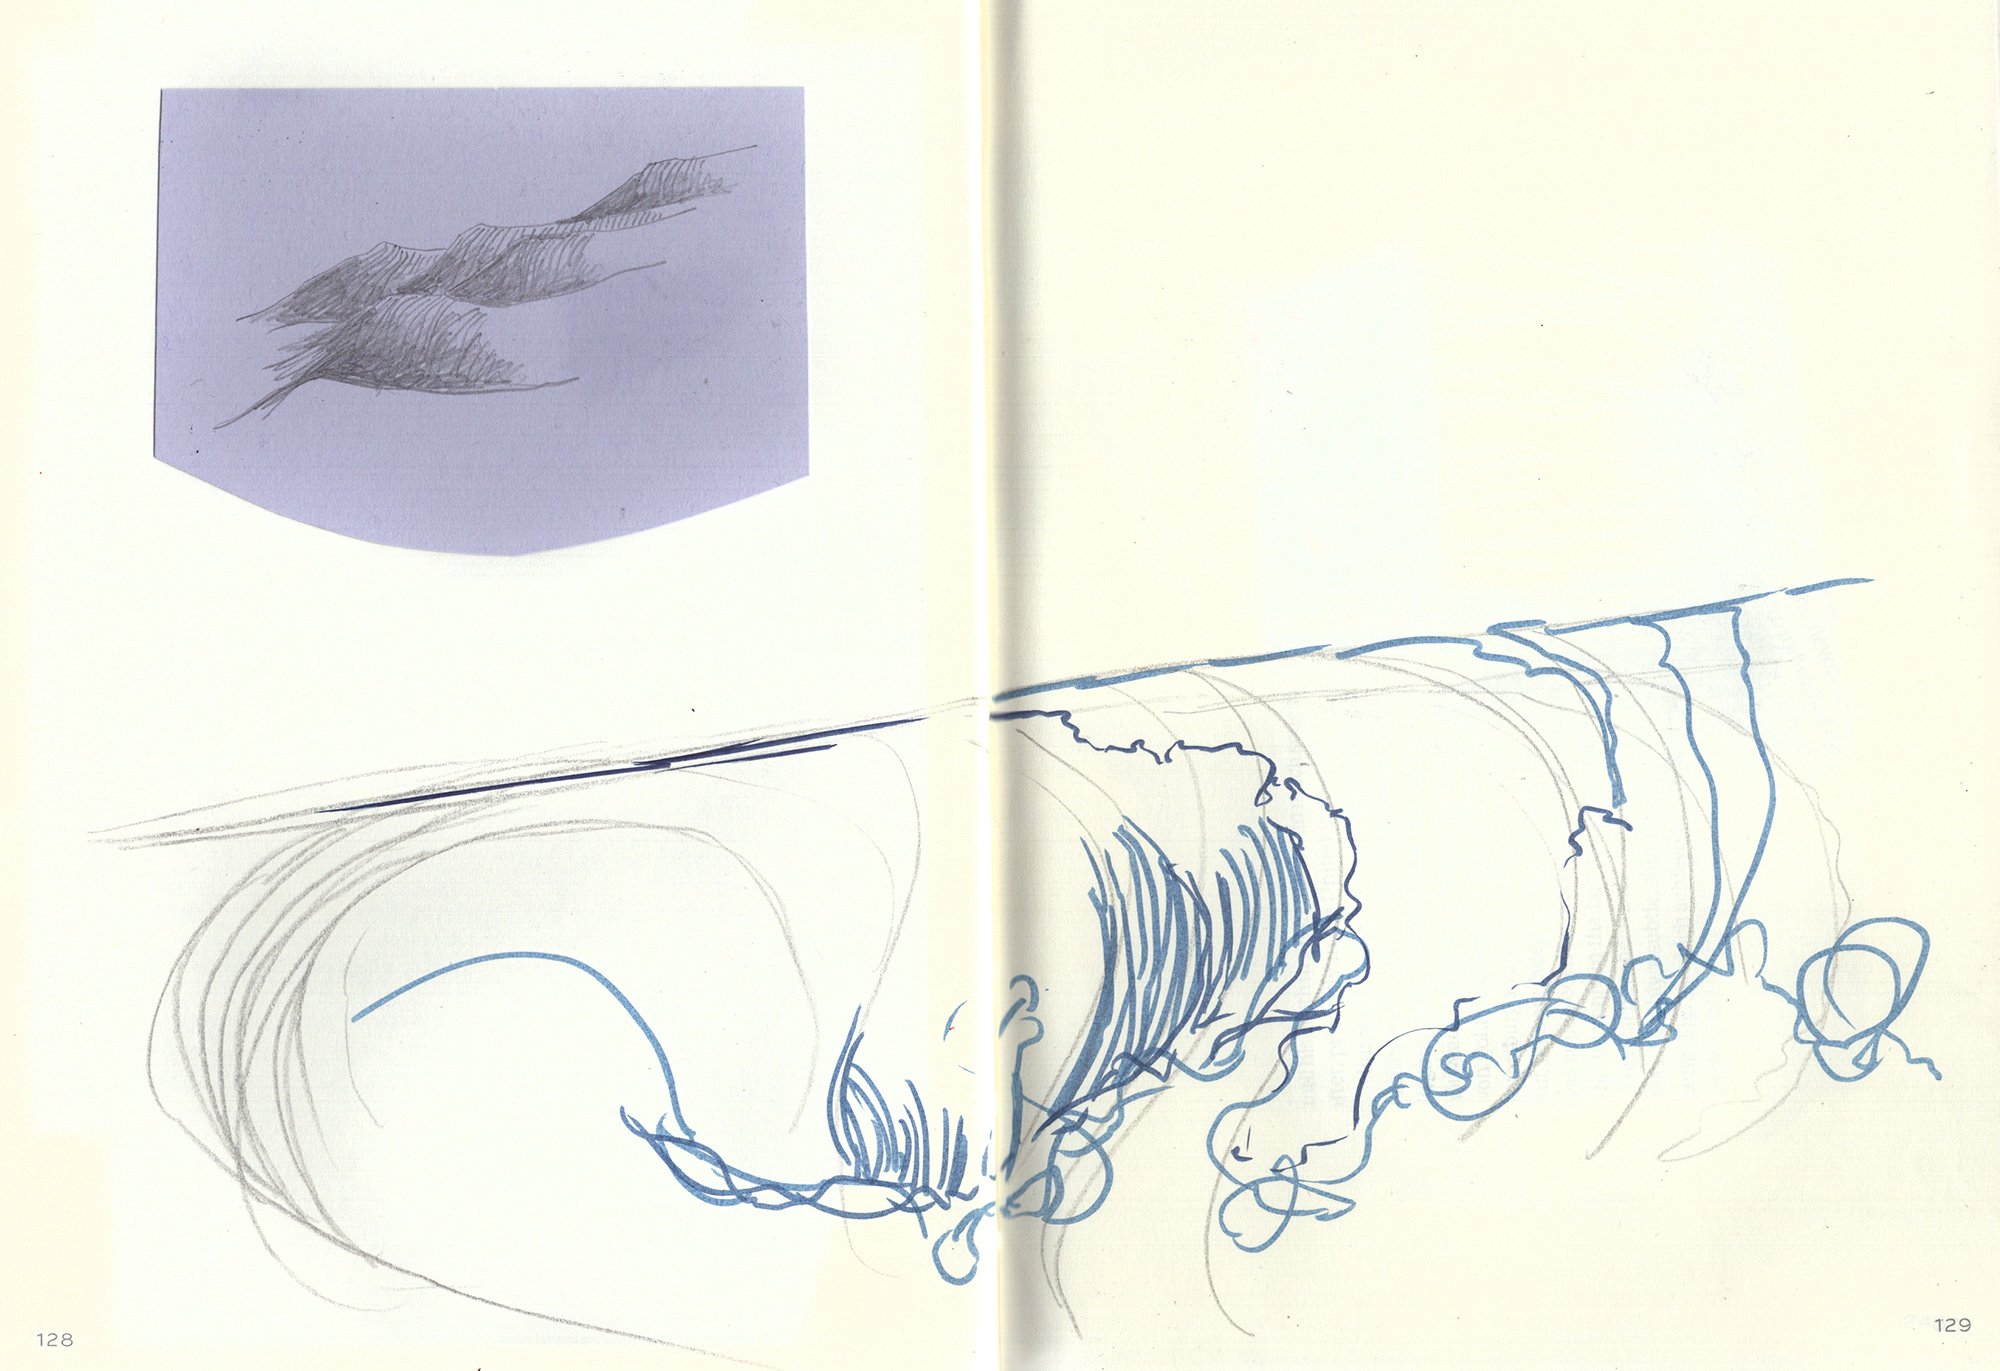 Wave drawings